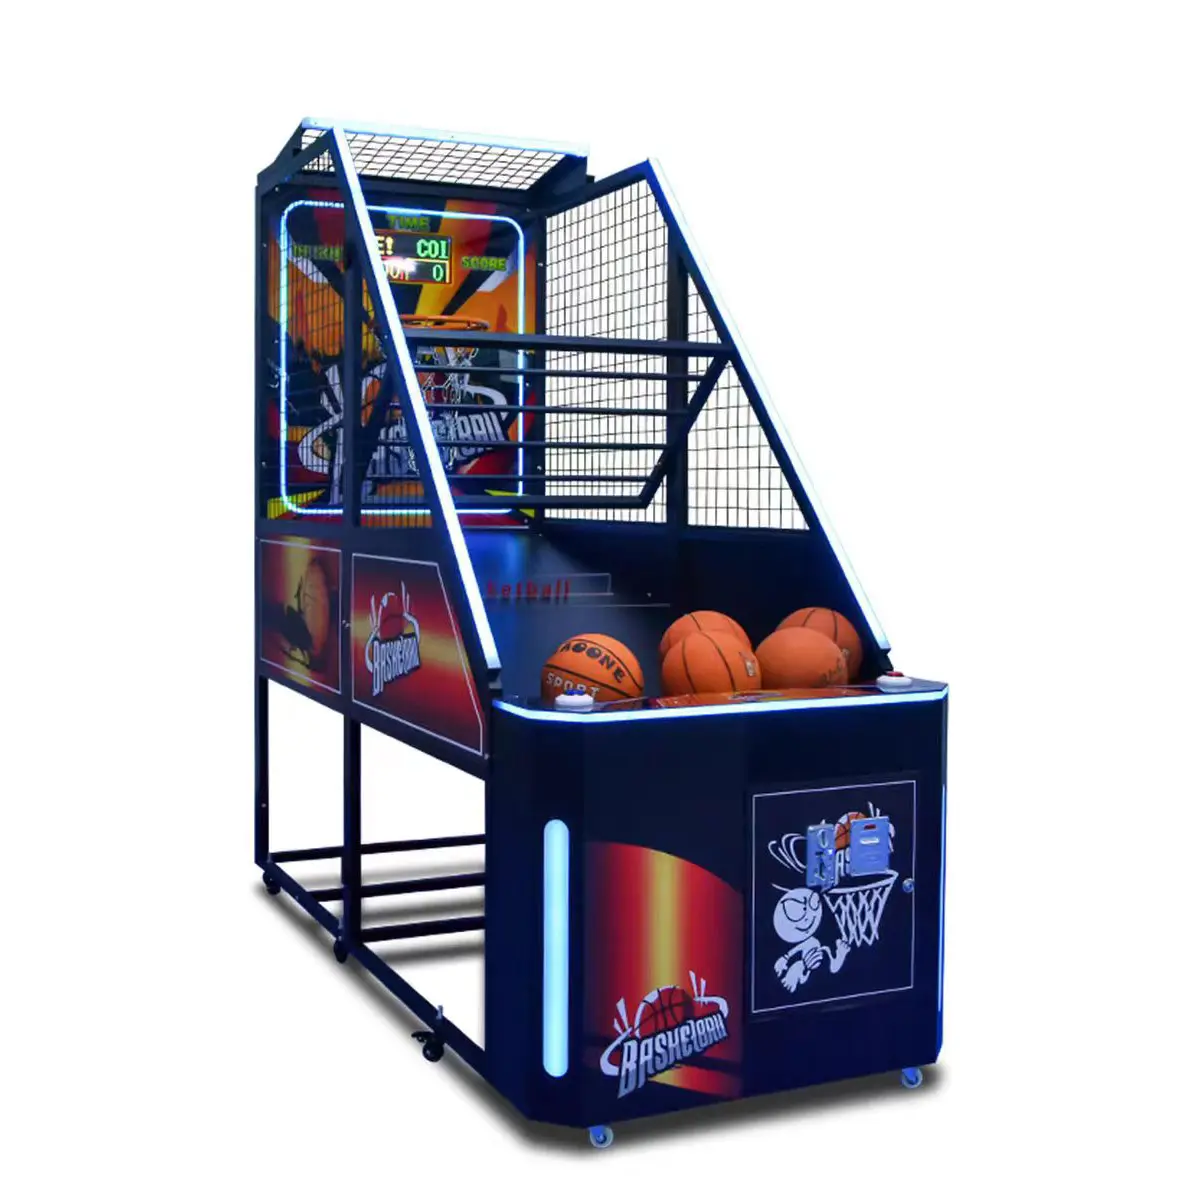 Arcade trò chơi giải trí đồng tiền hoạt động thể thao bóng rổ chụp máy trẻ em vui chơi giải trí công viên bóng rổ Trò chơi giao diện điều khiển